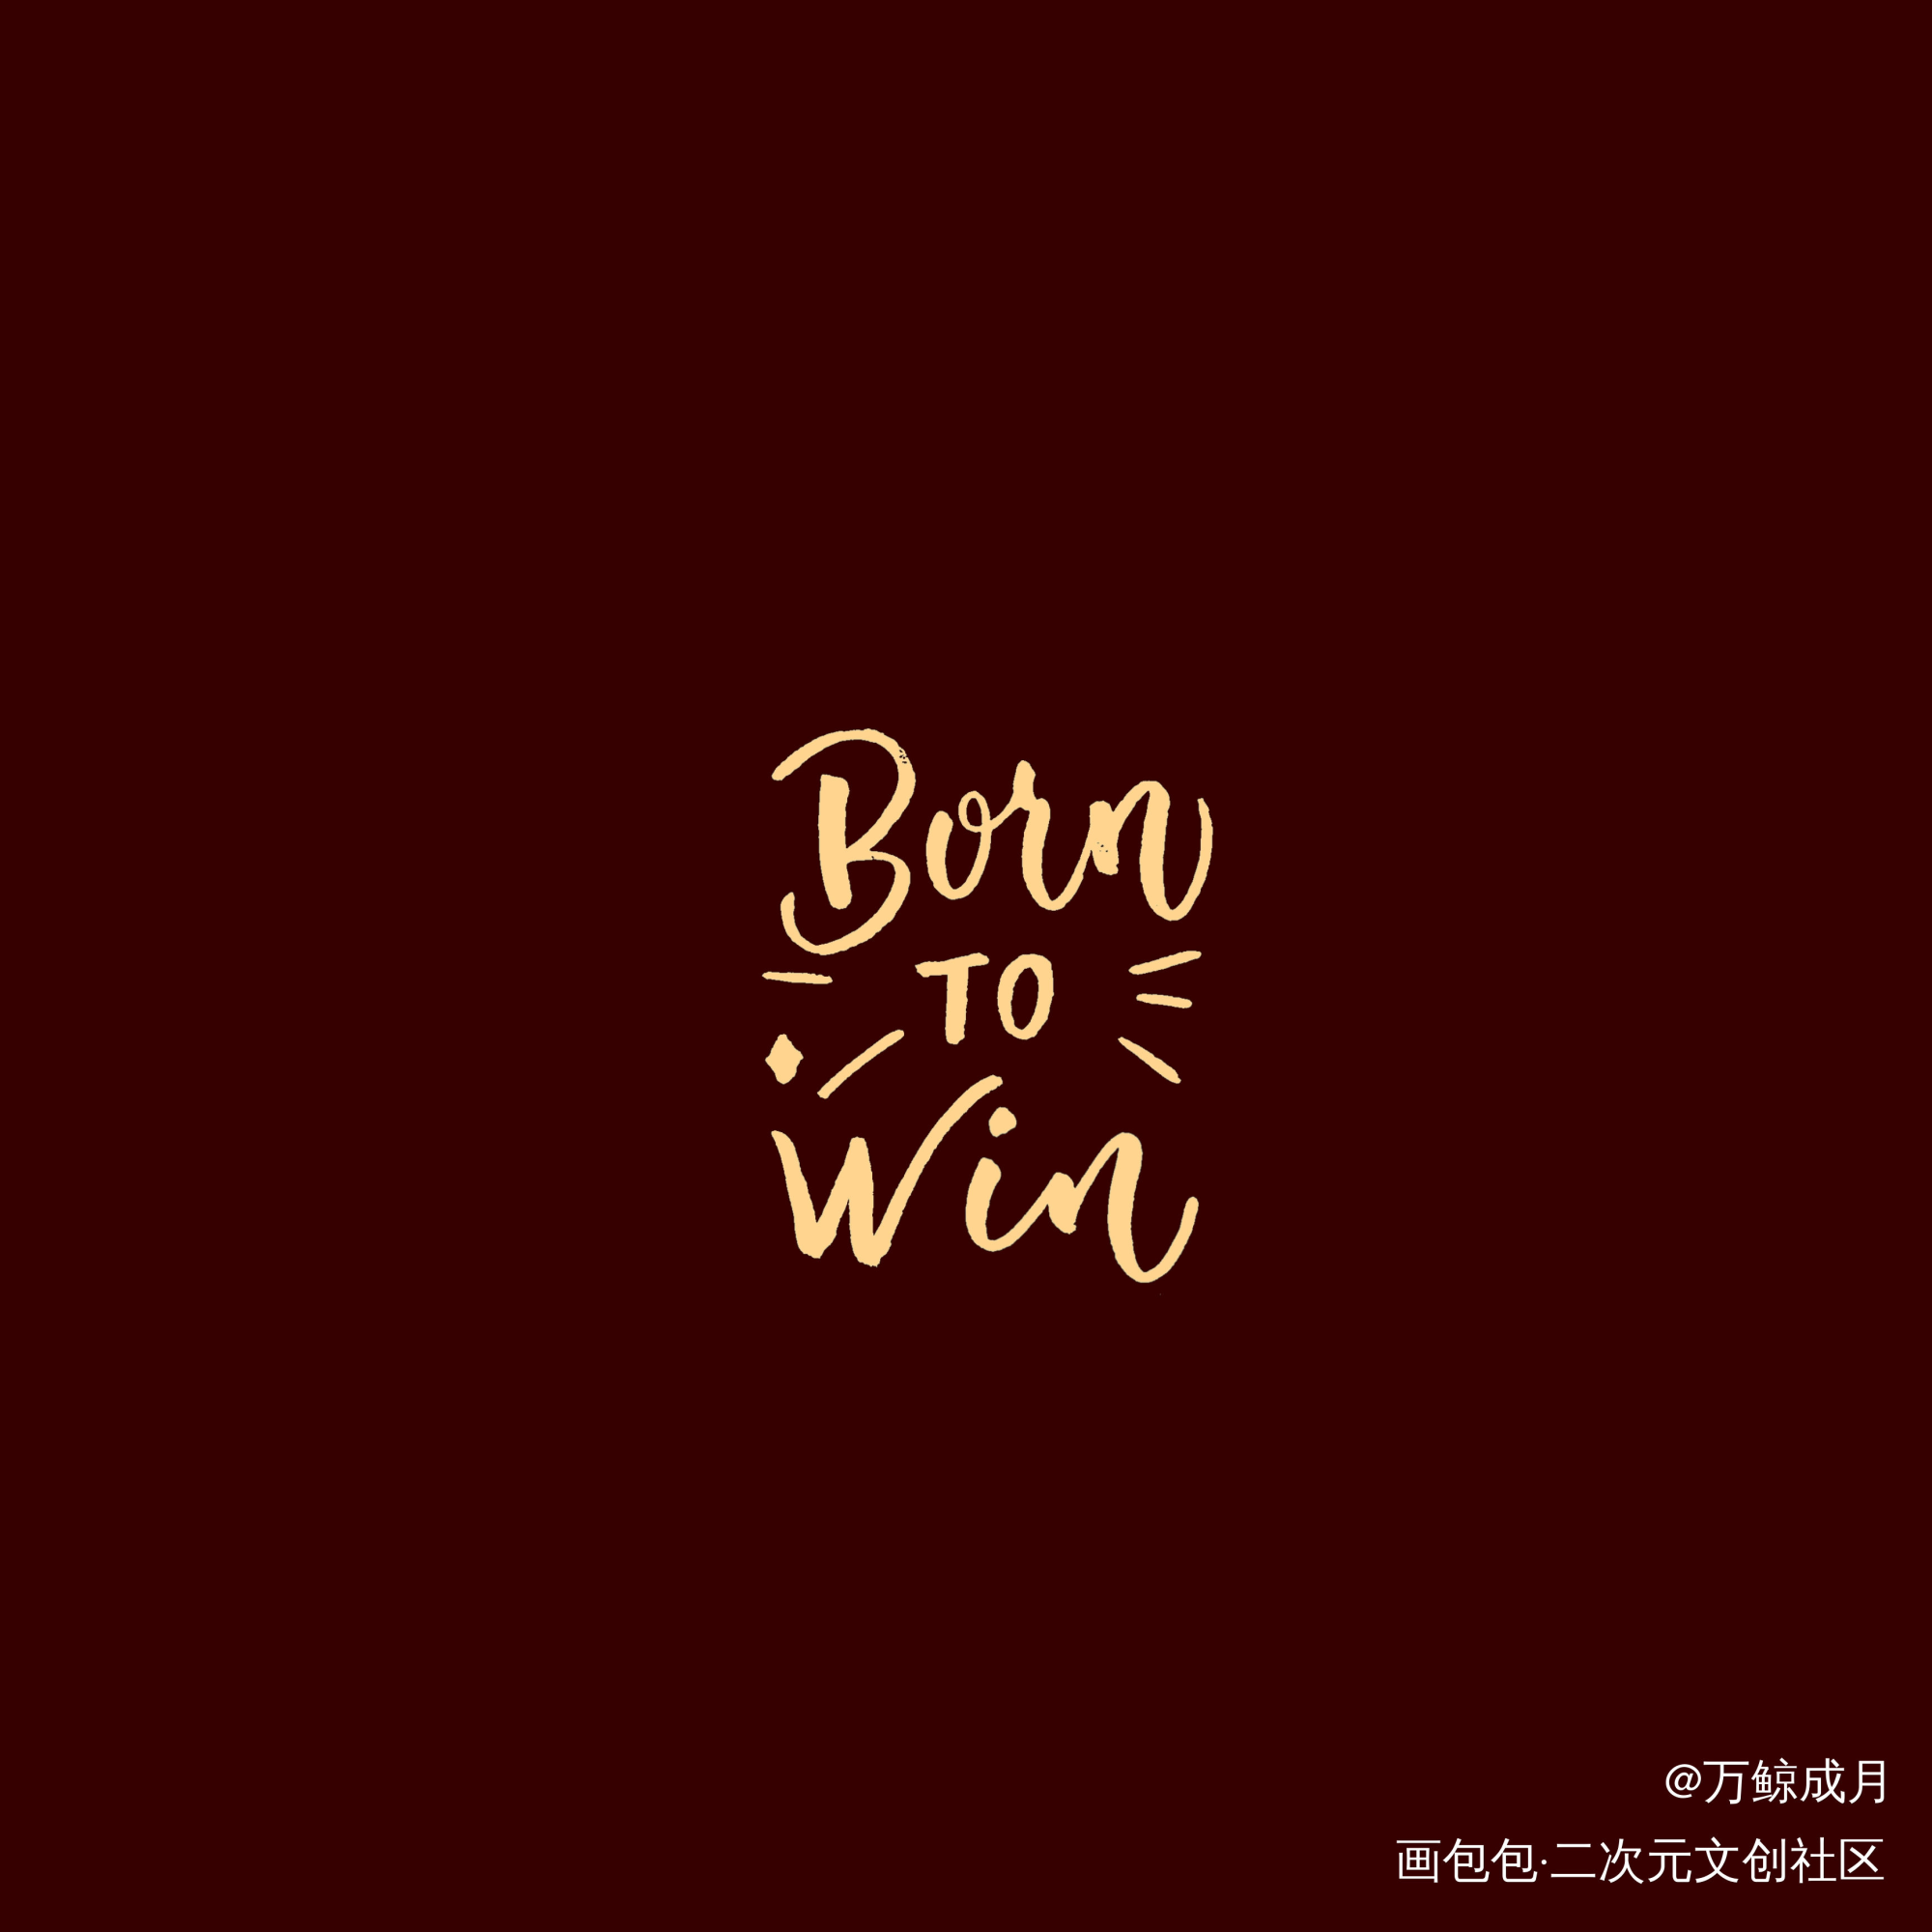 born to win_字体设计见字如晤见字如晤板写手写绘画作品